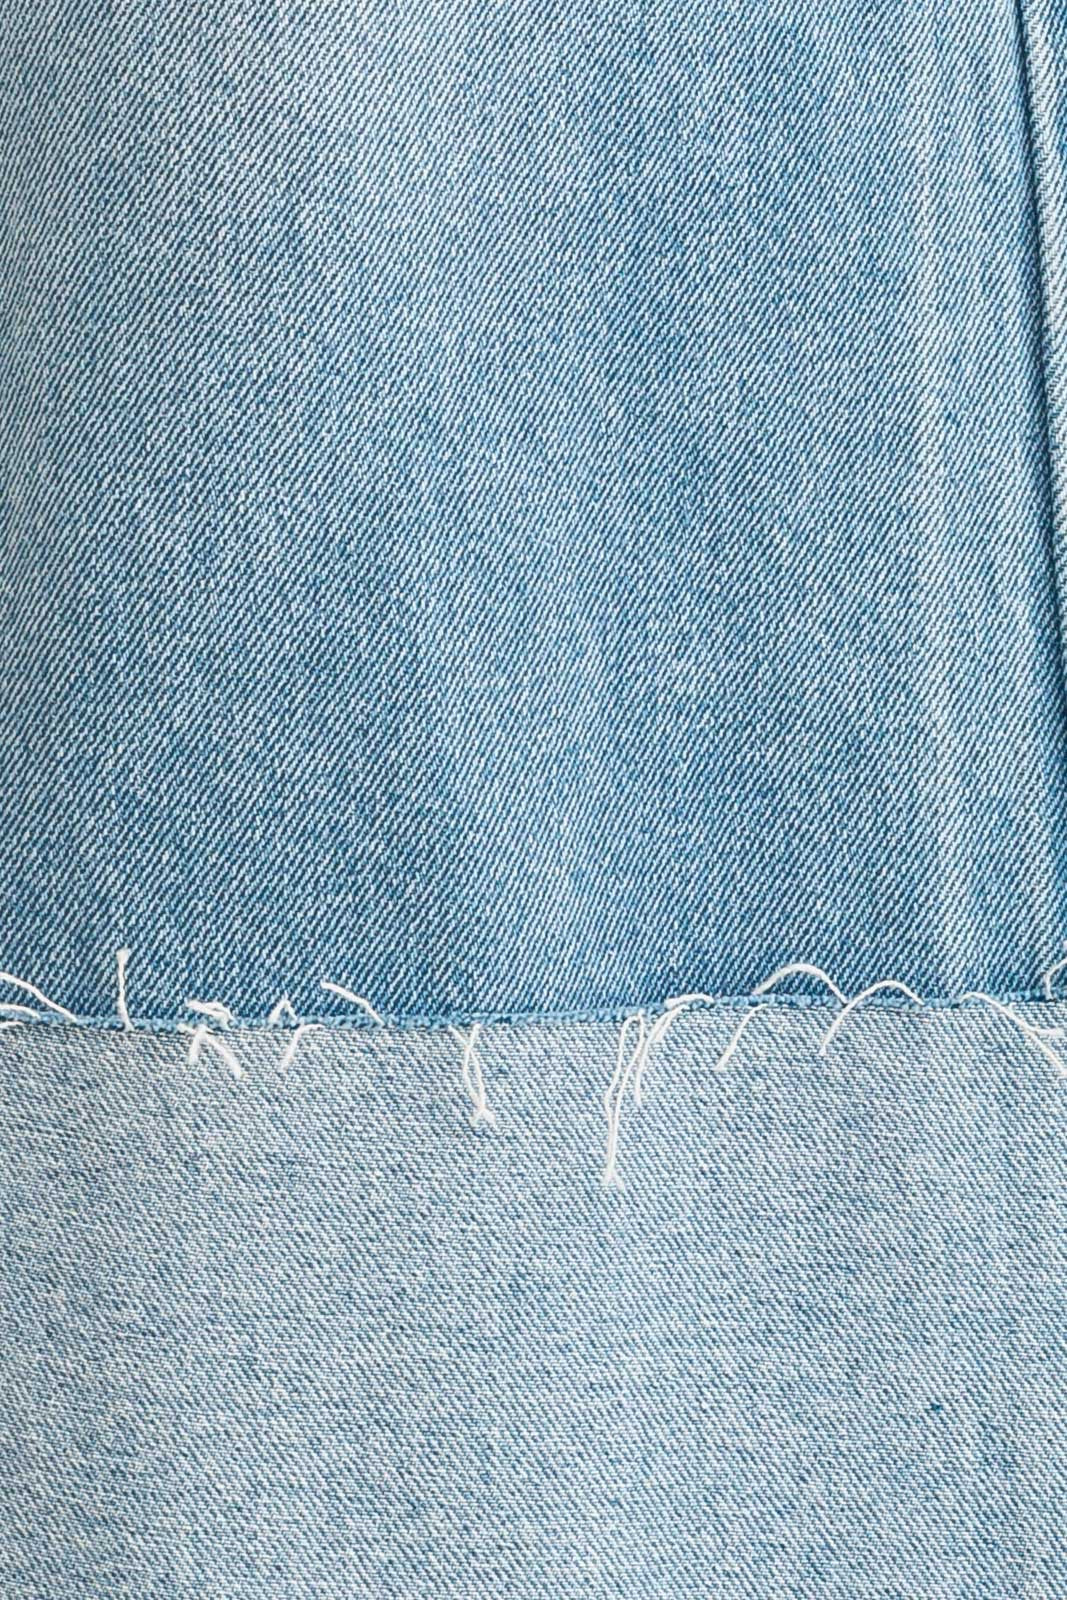 Premium Photo | Light blue washed cotton jeans denim texture background,  close up